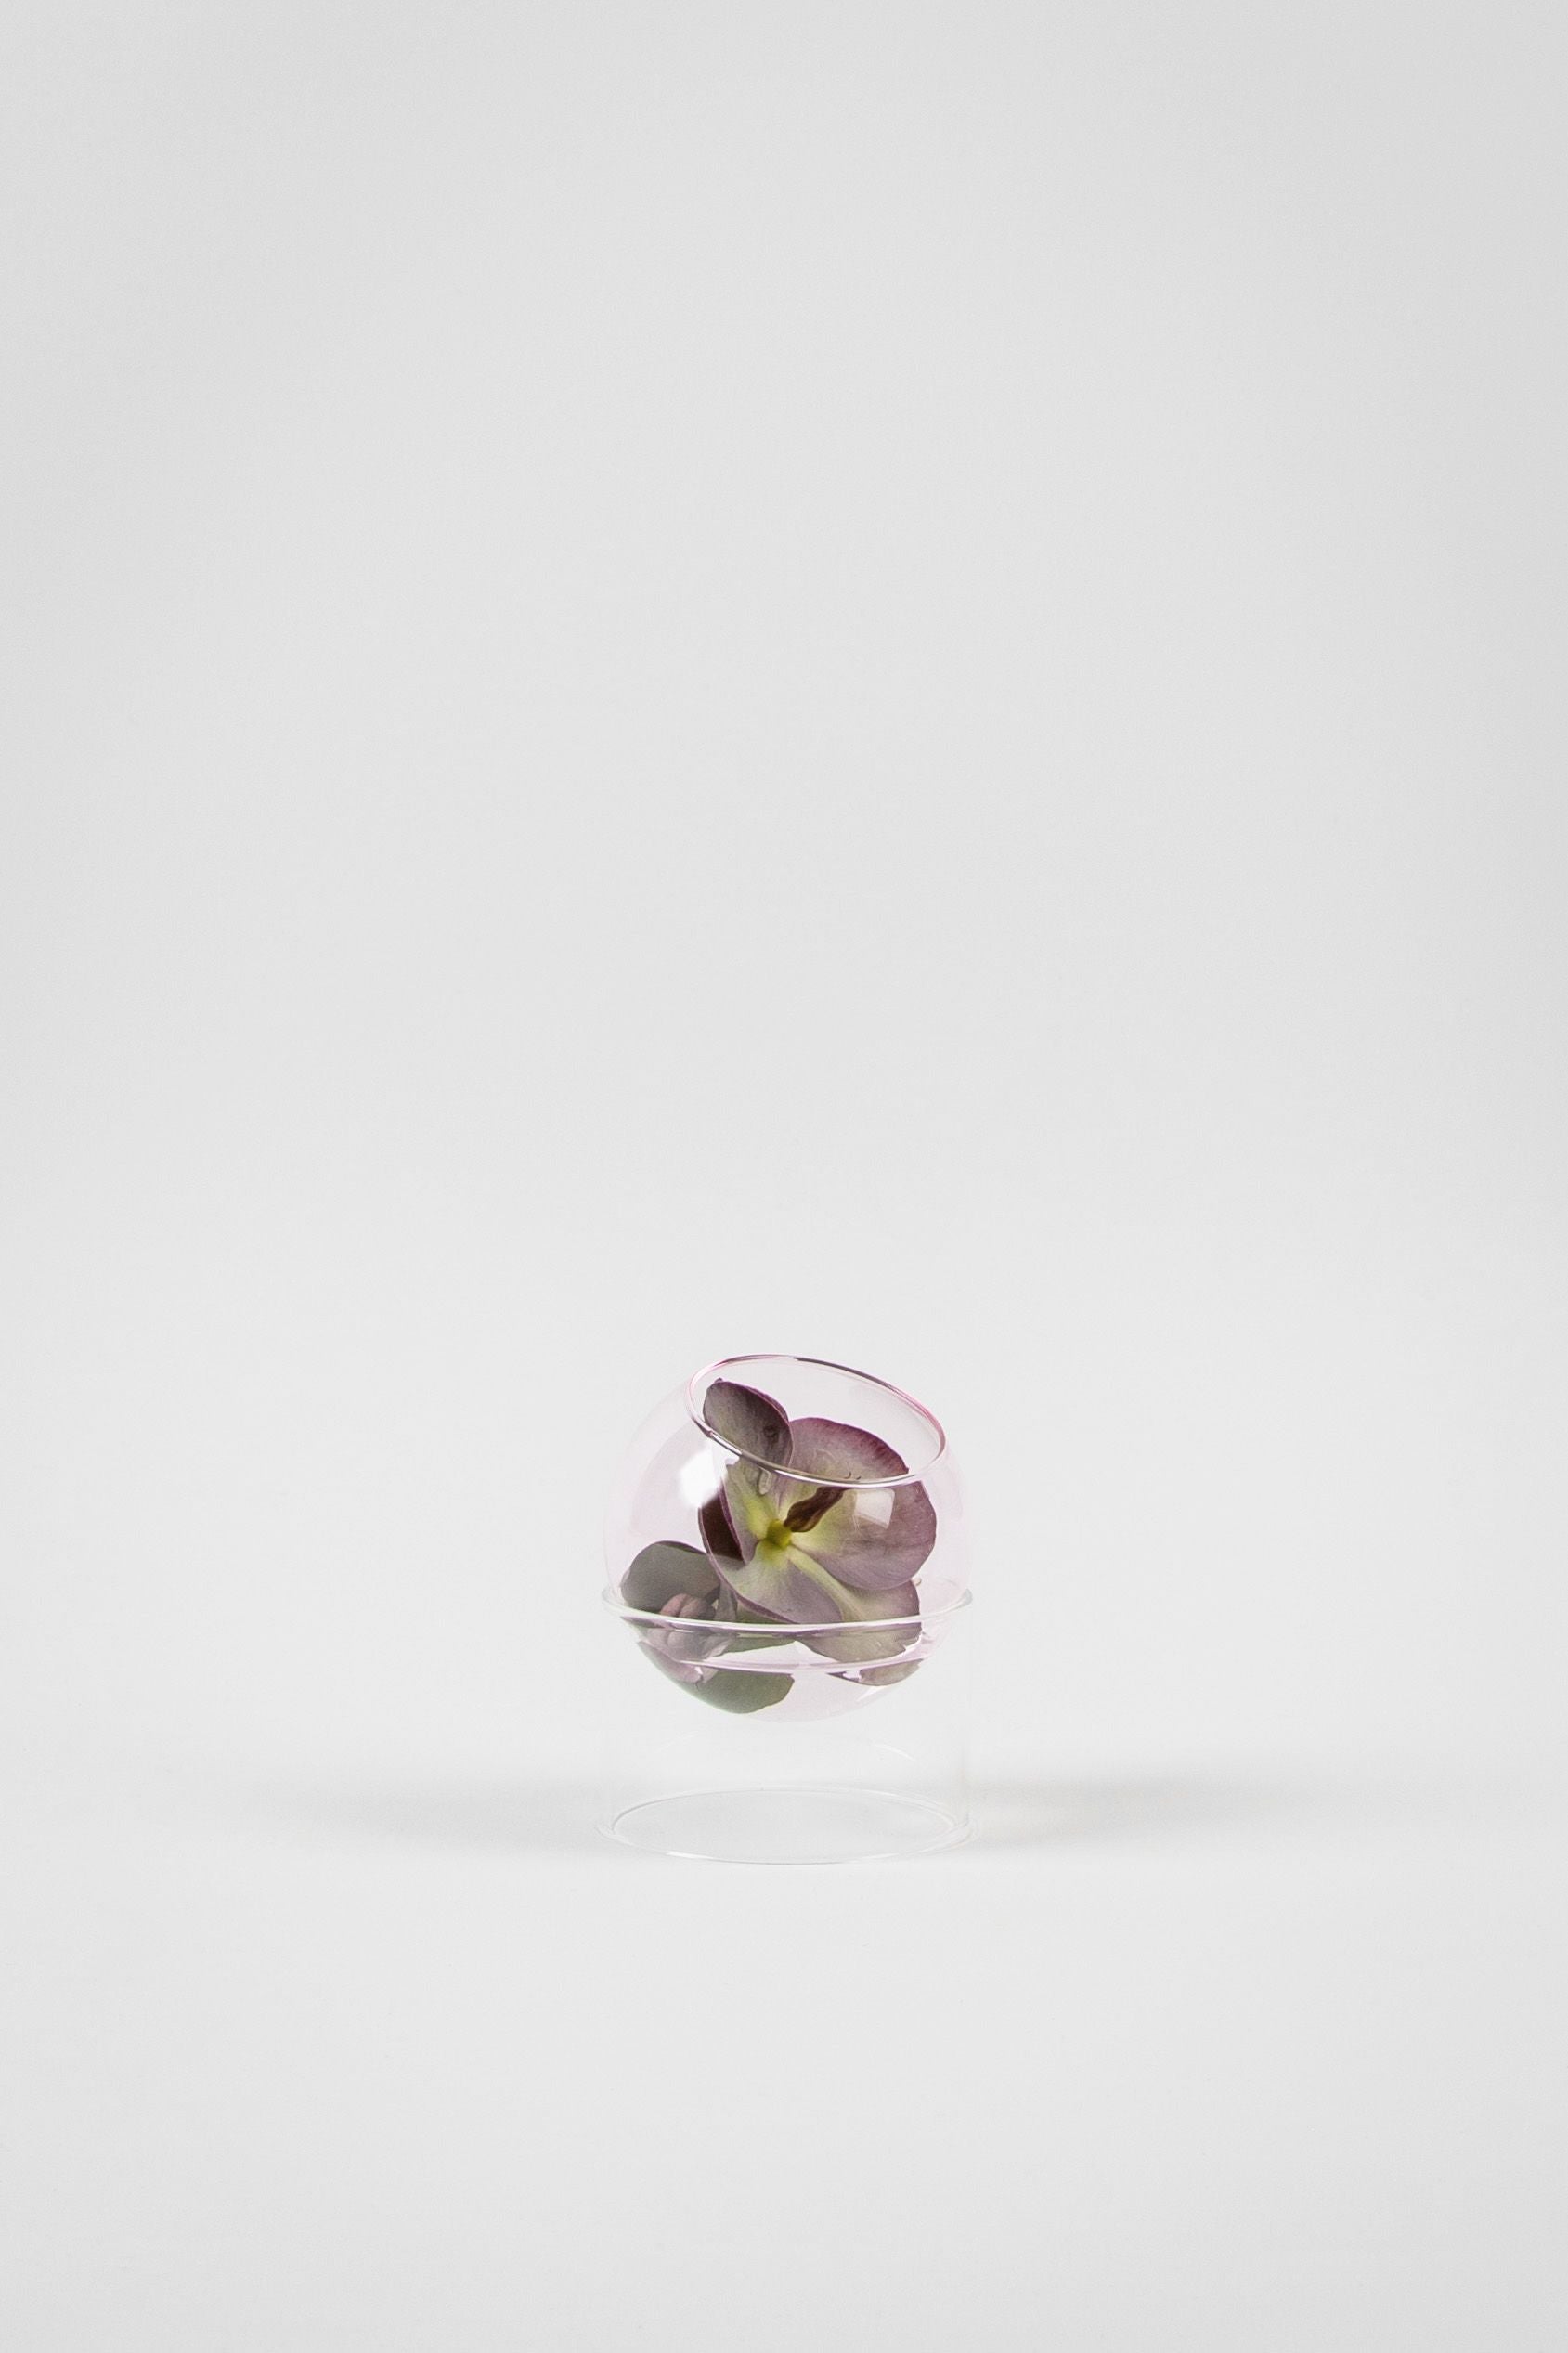 Studio sur le vase de bulles de plantes debout, rose